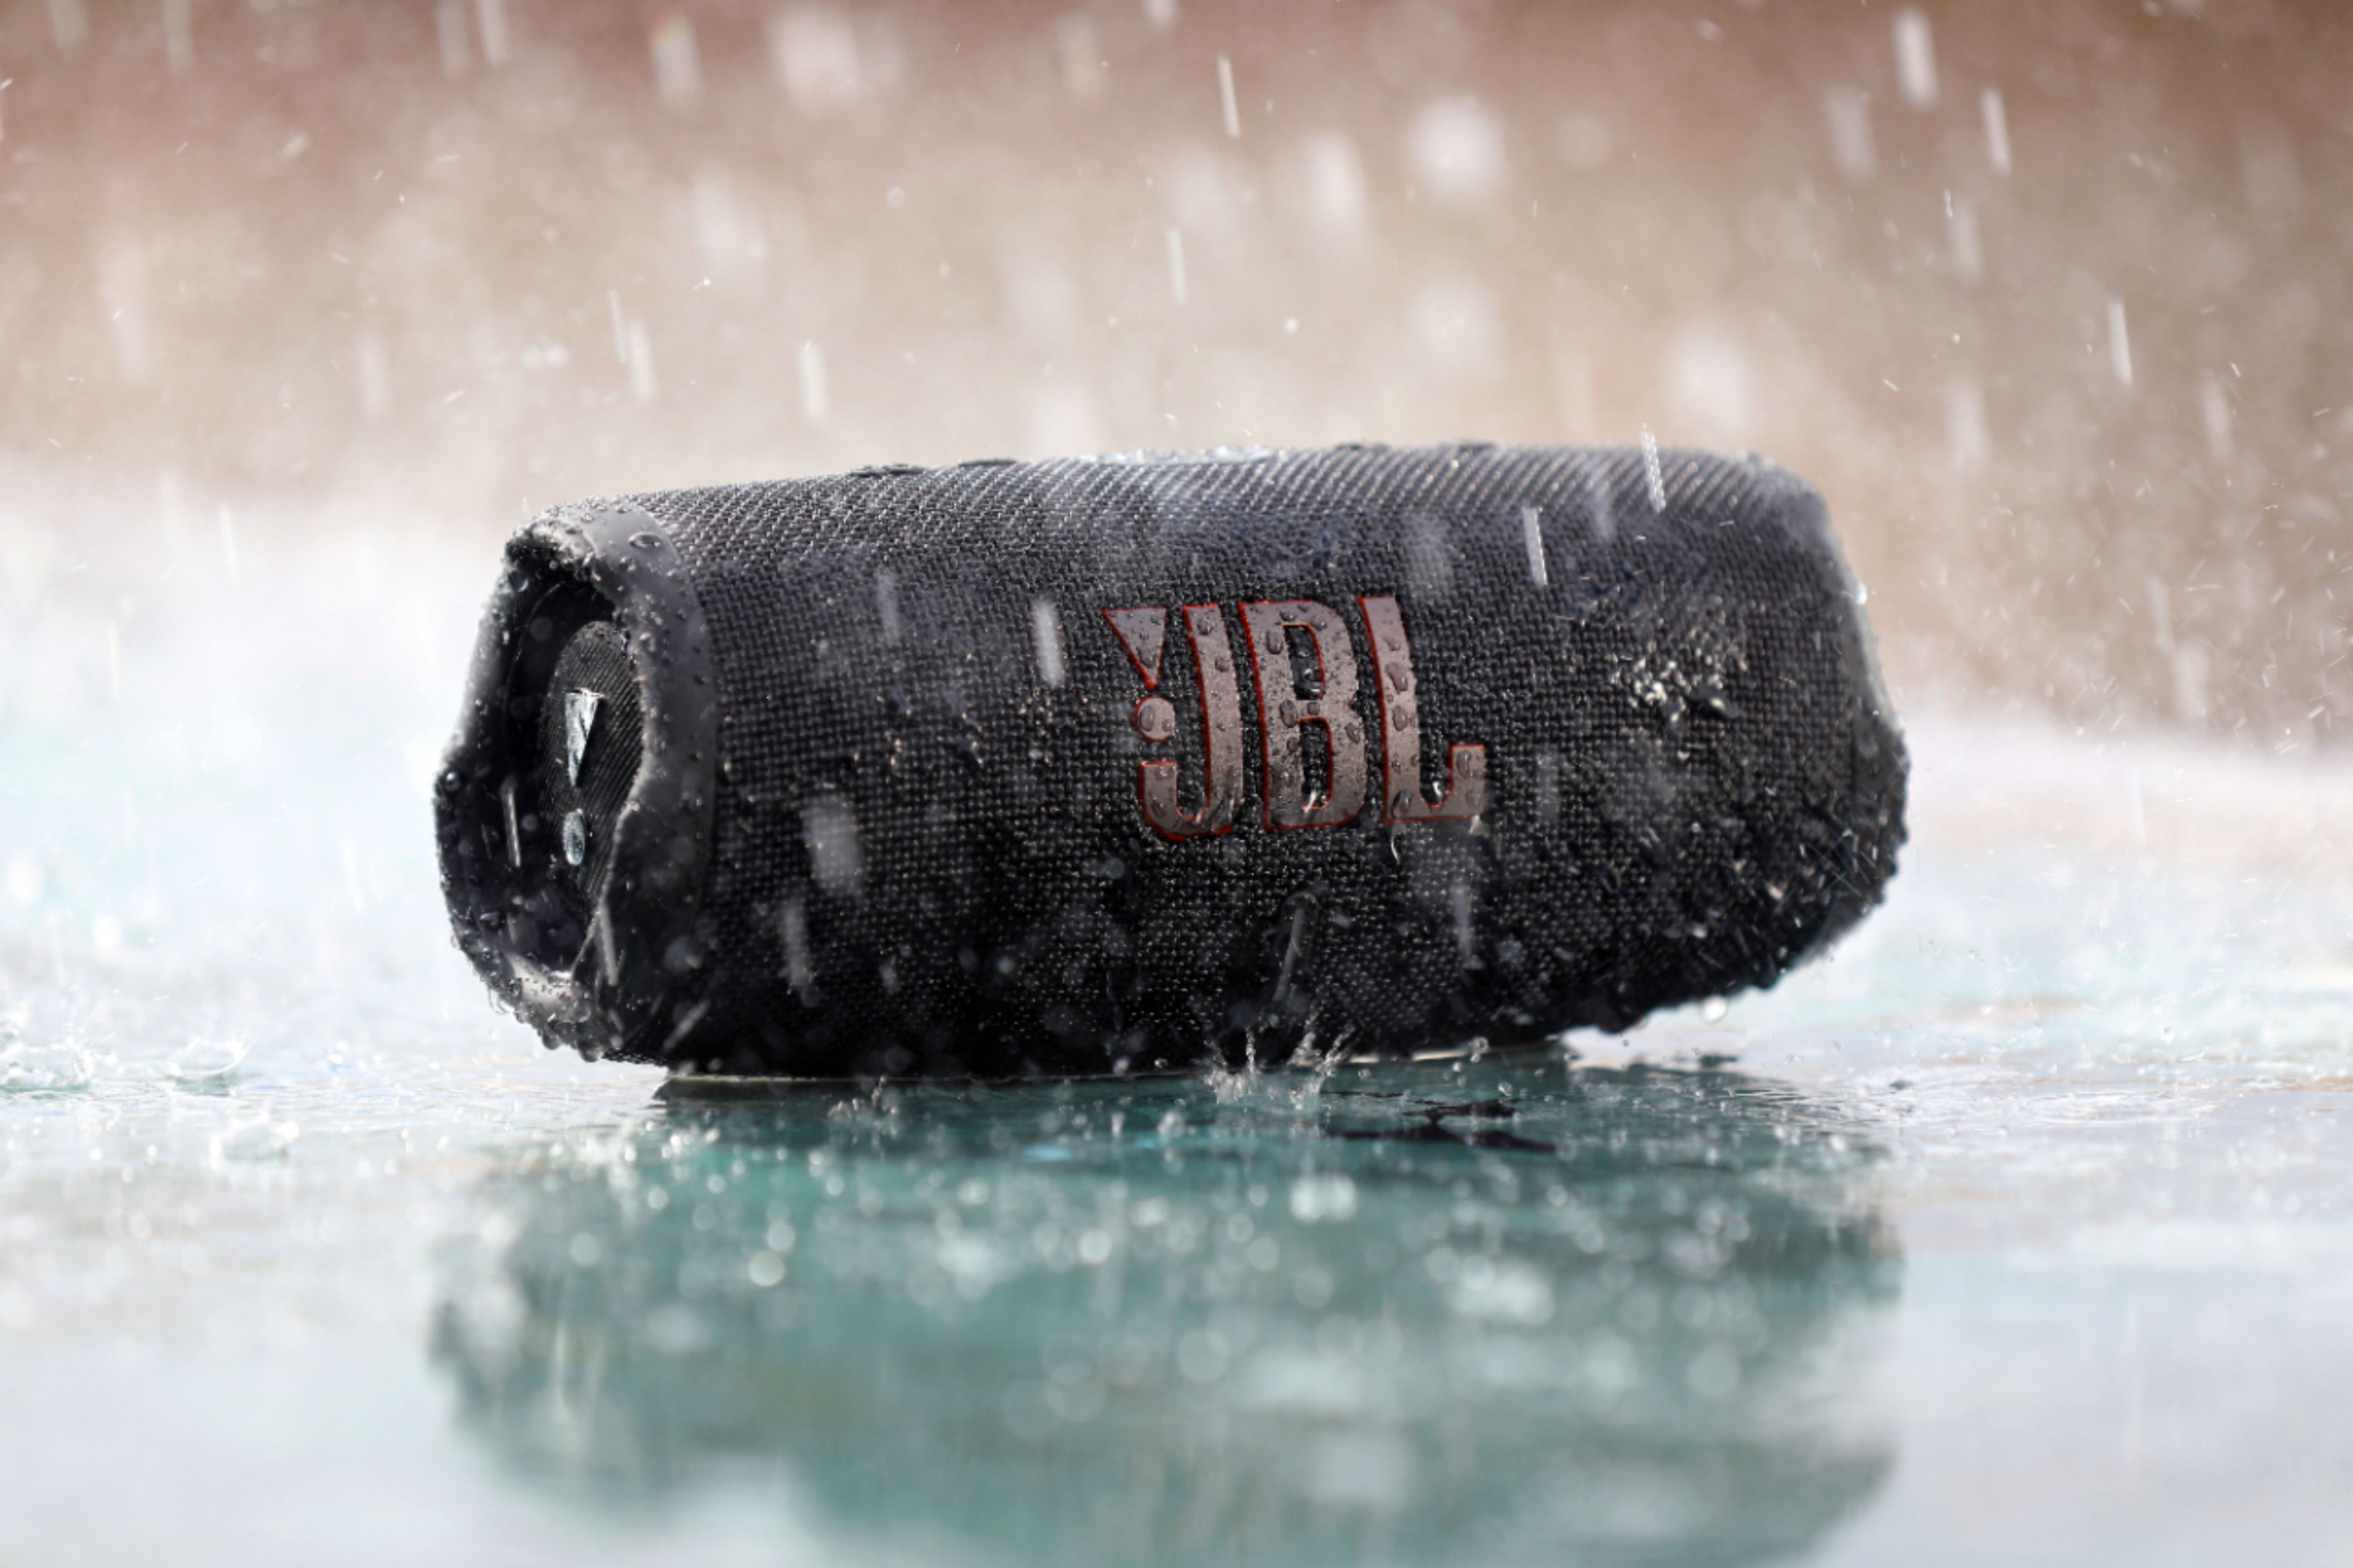 Best Buy: JBL GO 2 Portable Bluetooth Speaker Gold JBLGO2CHAMPAGNE